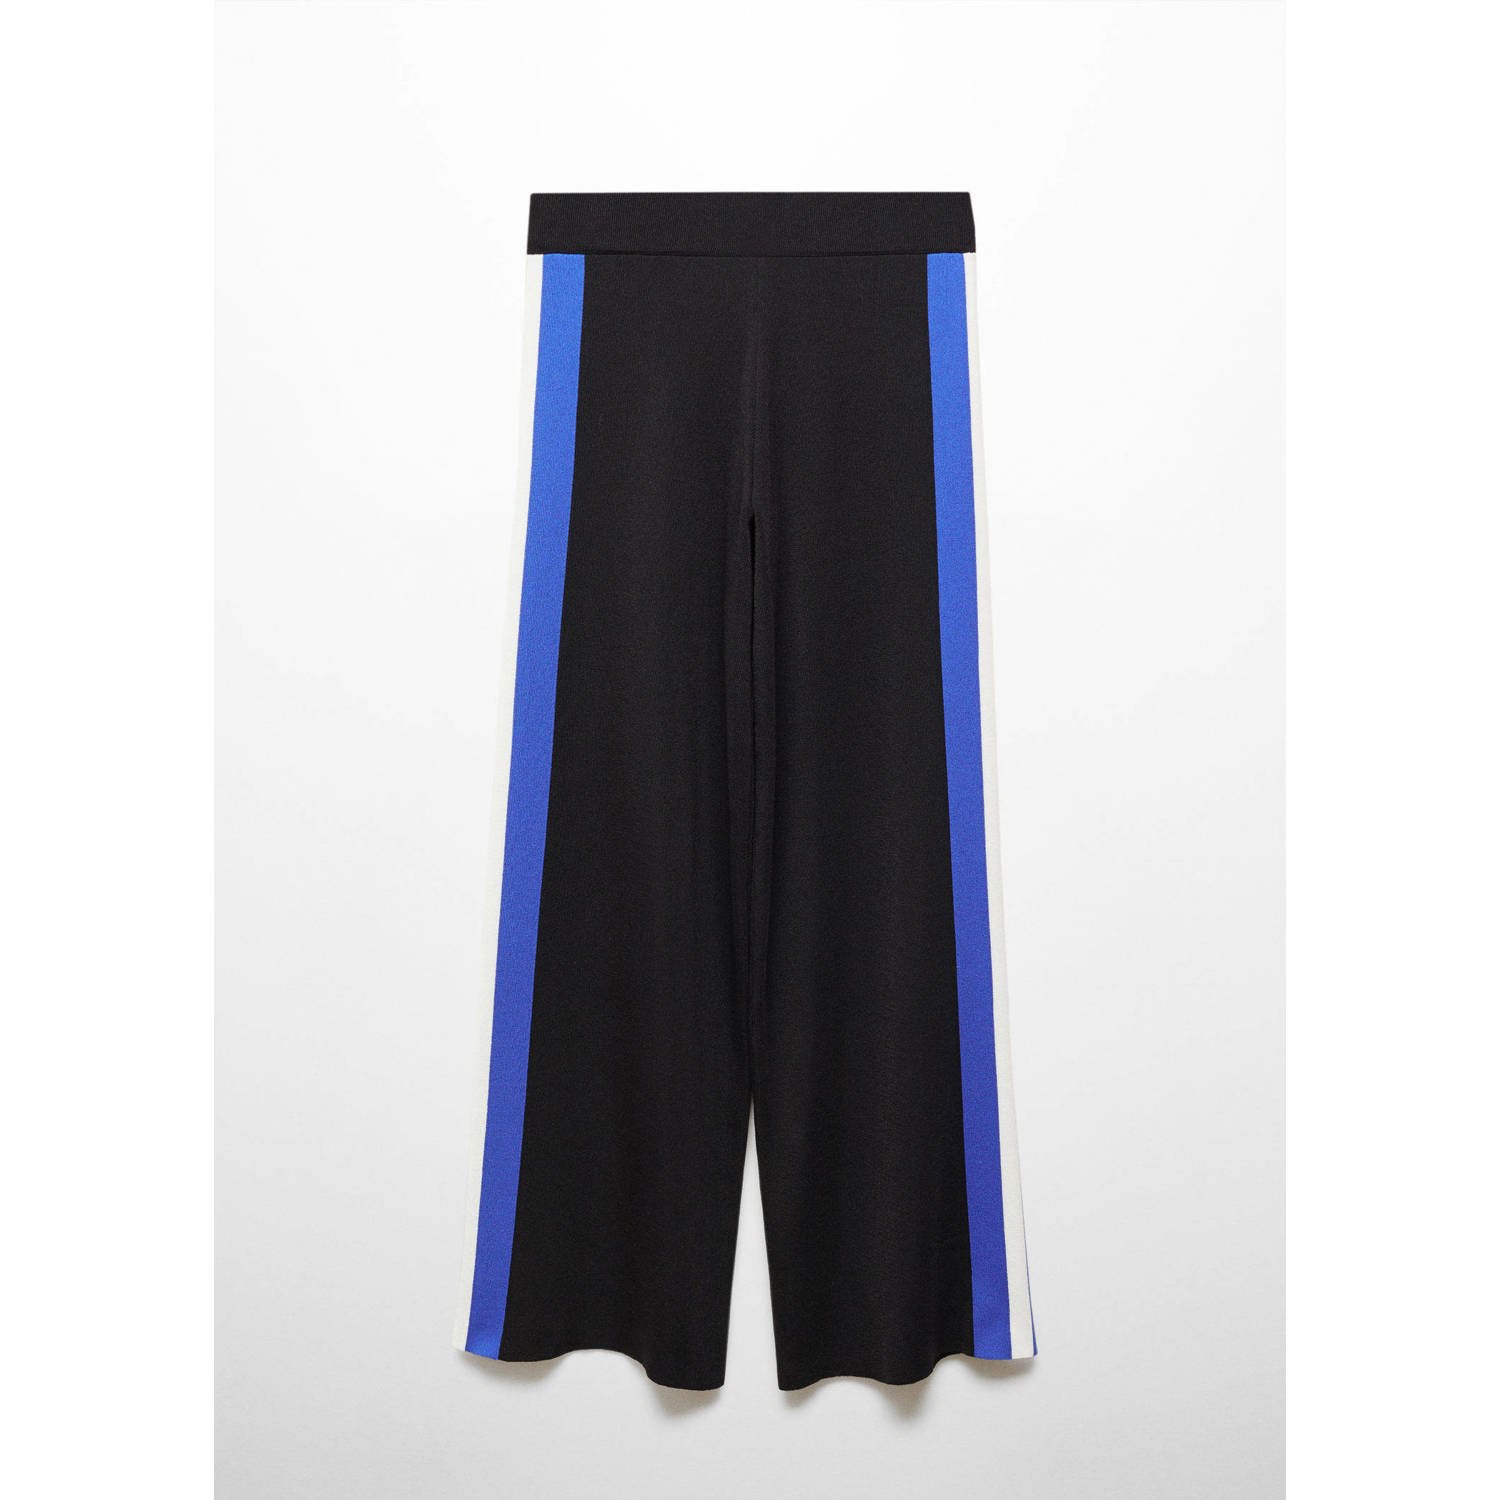 Mango high waist straight fit broek met zijstreep zwart blauw wit